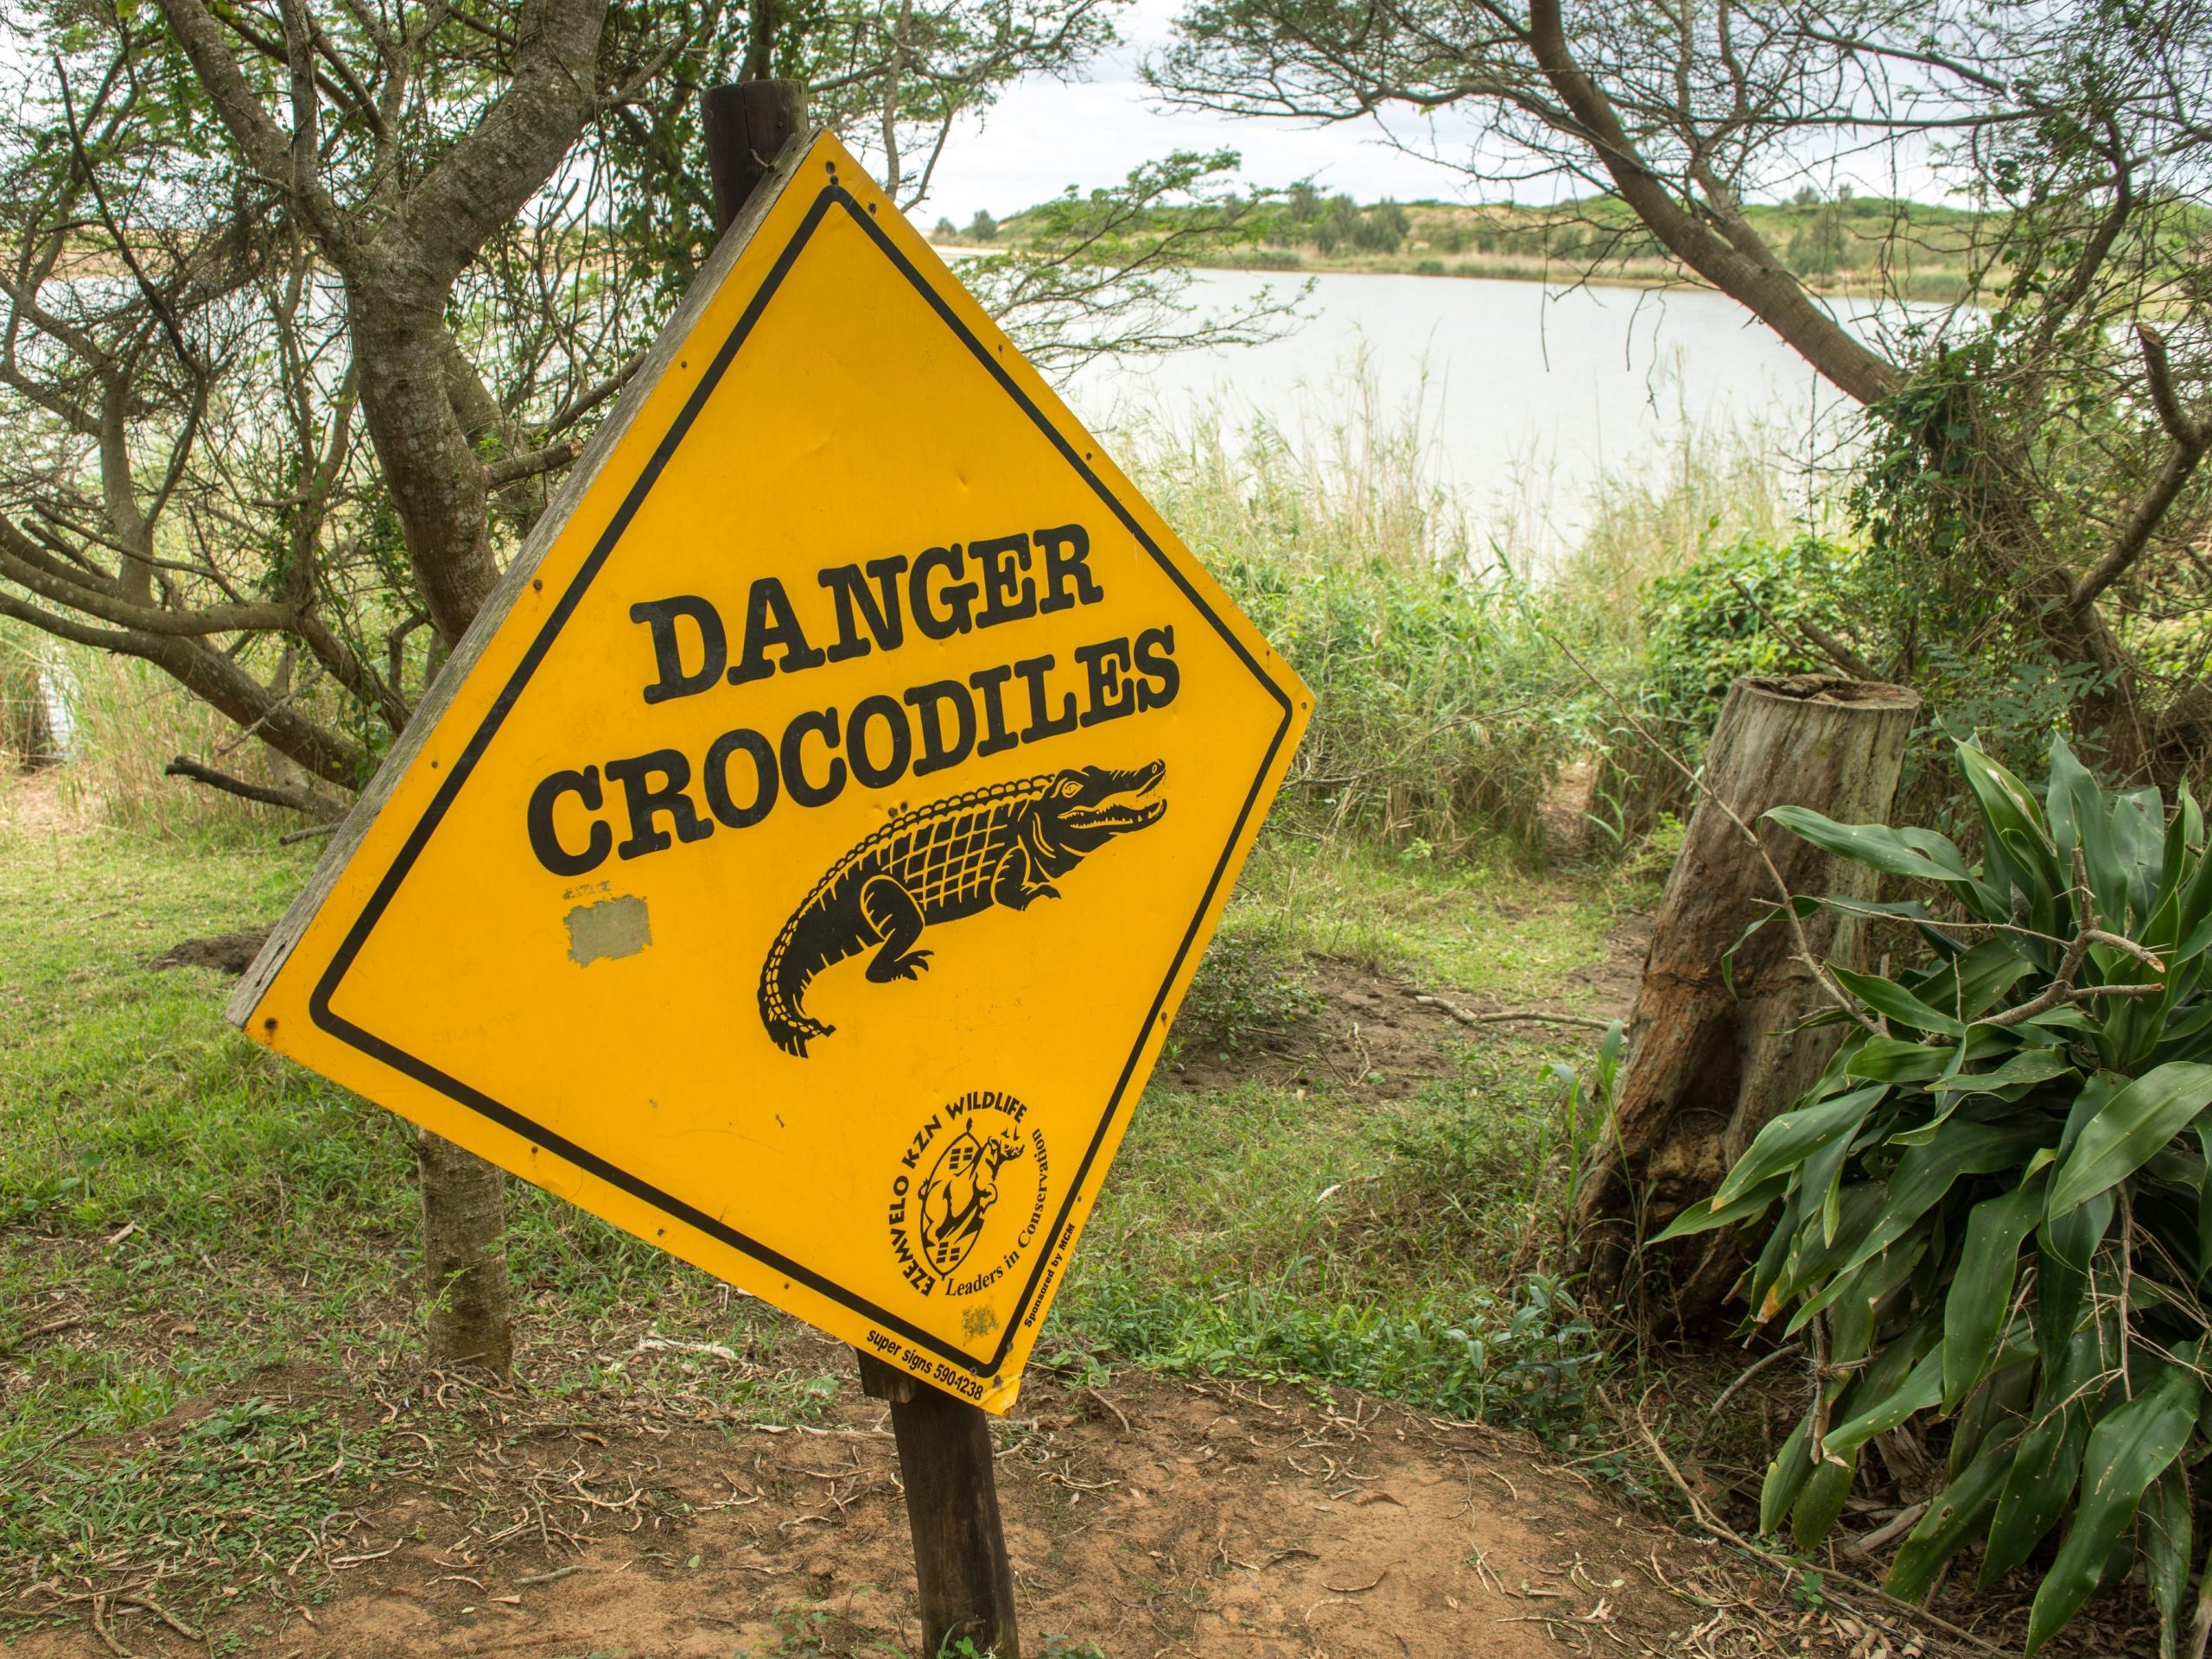 Crocodile danger warning sign